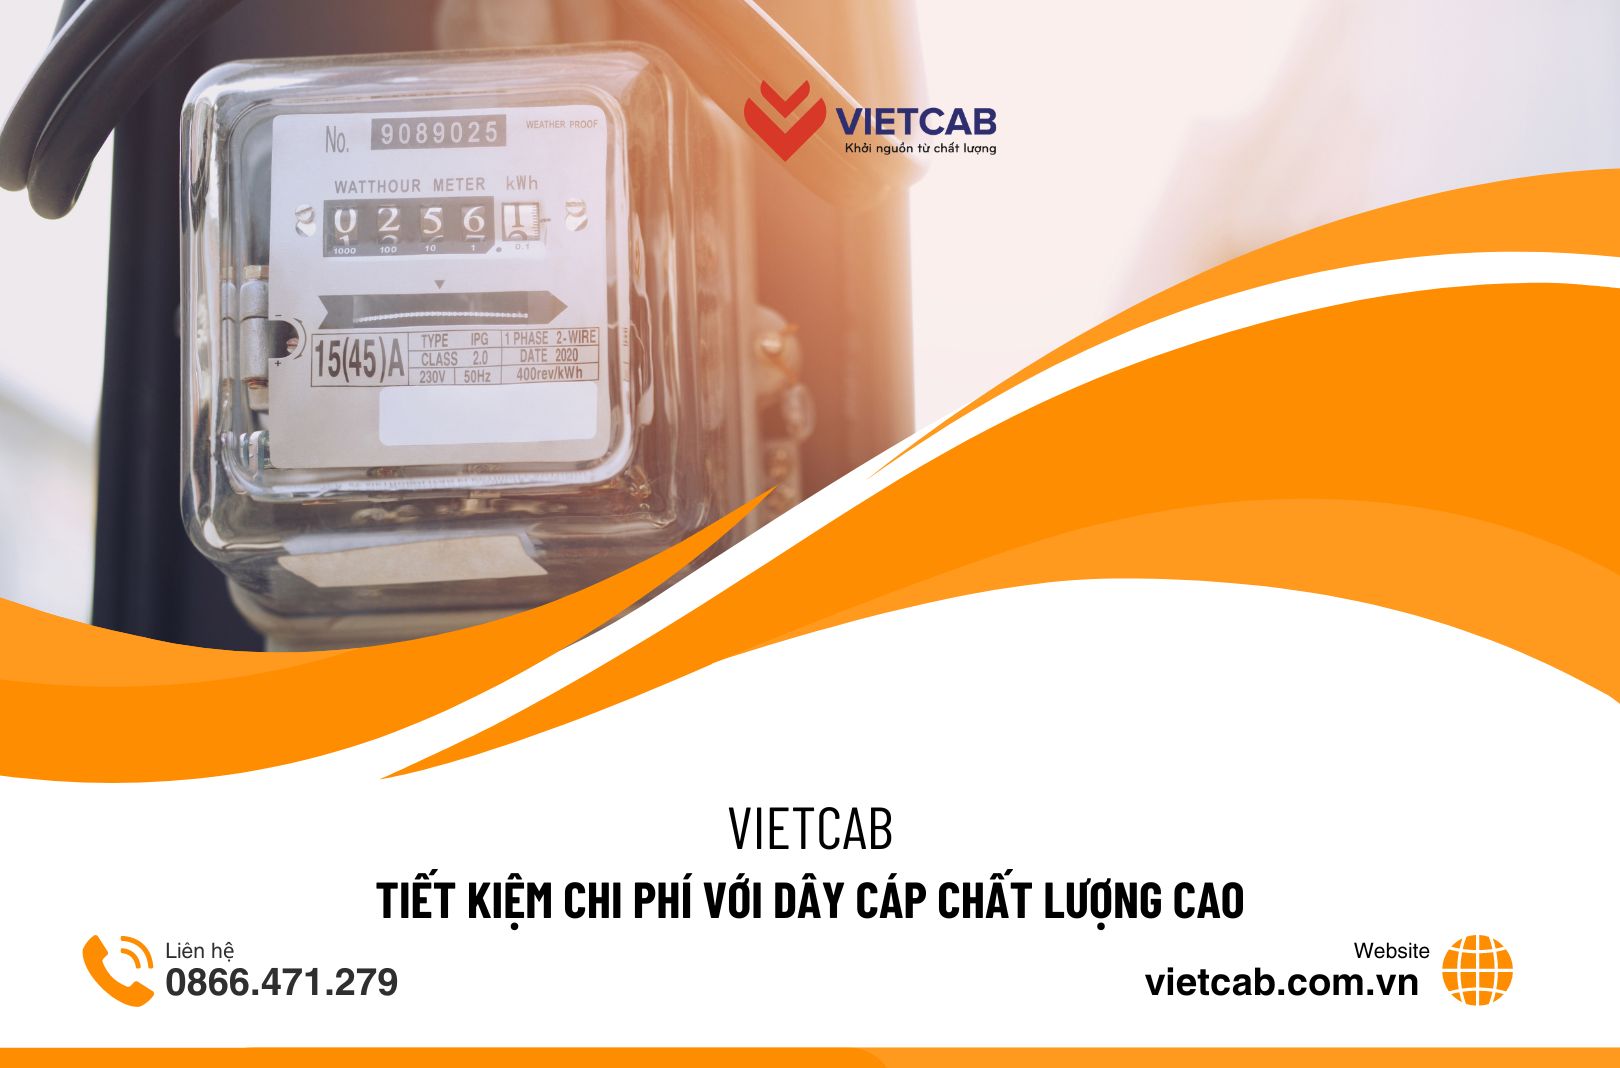 Vietcab – Tiết kiệm chi phí với dây cáp chất lượng cao